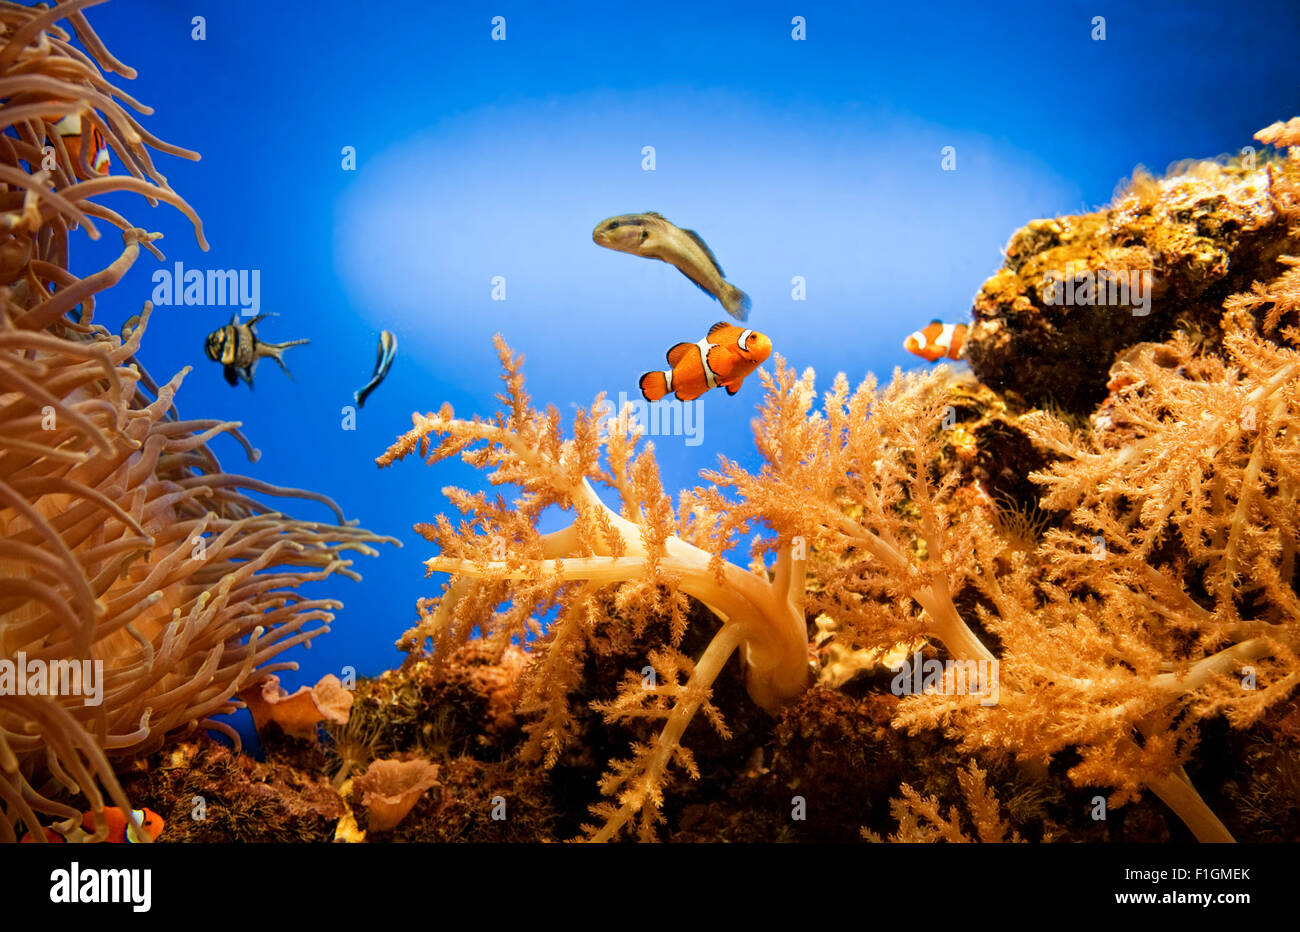 Underwater life Stock Photo